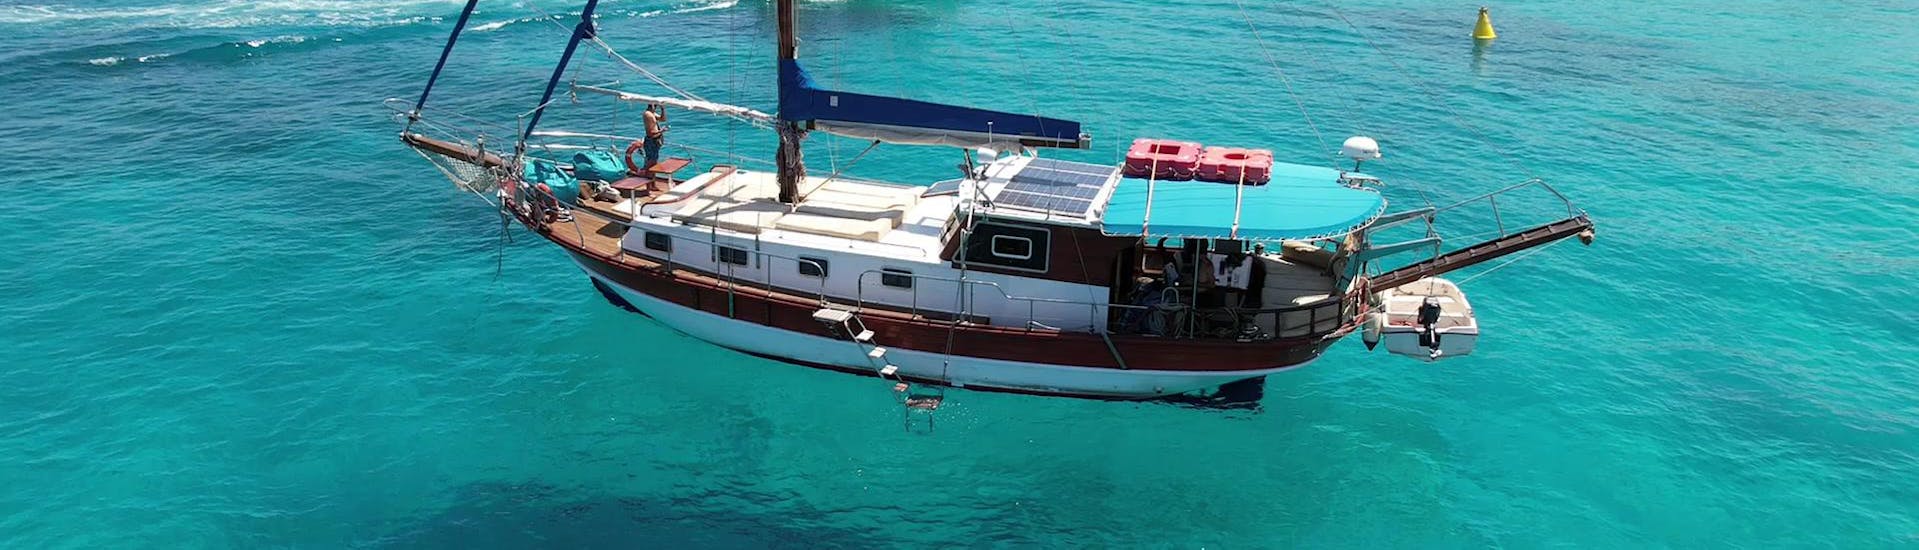 The boat Gulet KelSea floats in the ocean